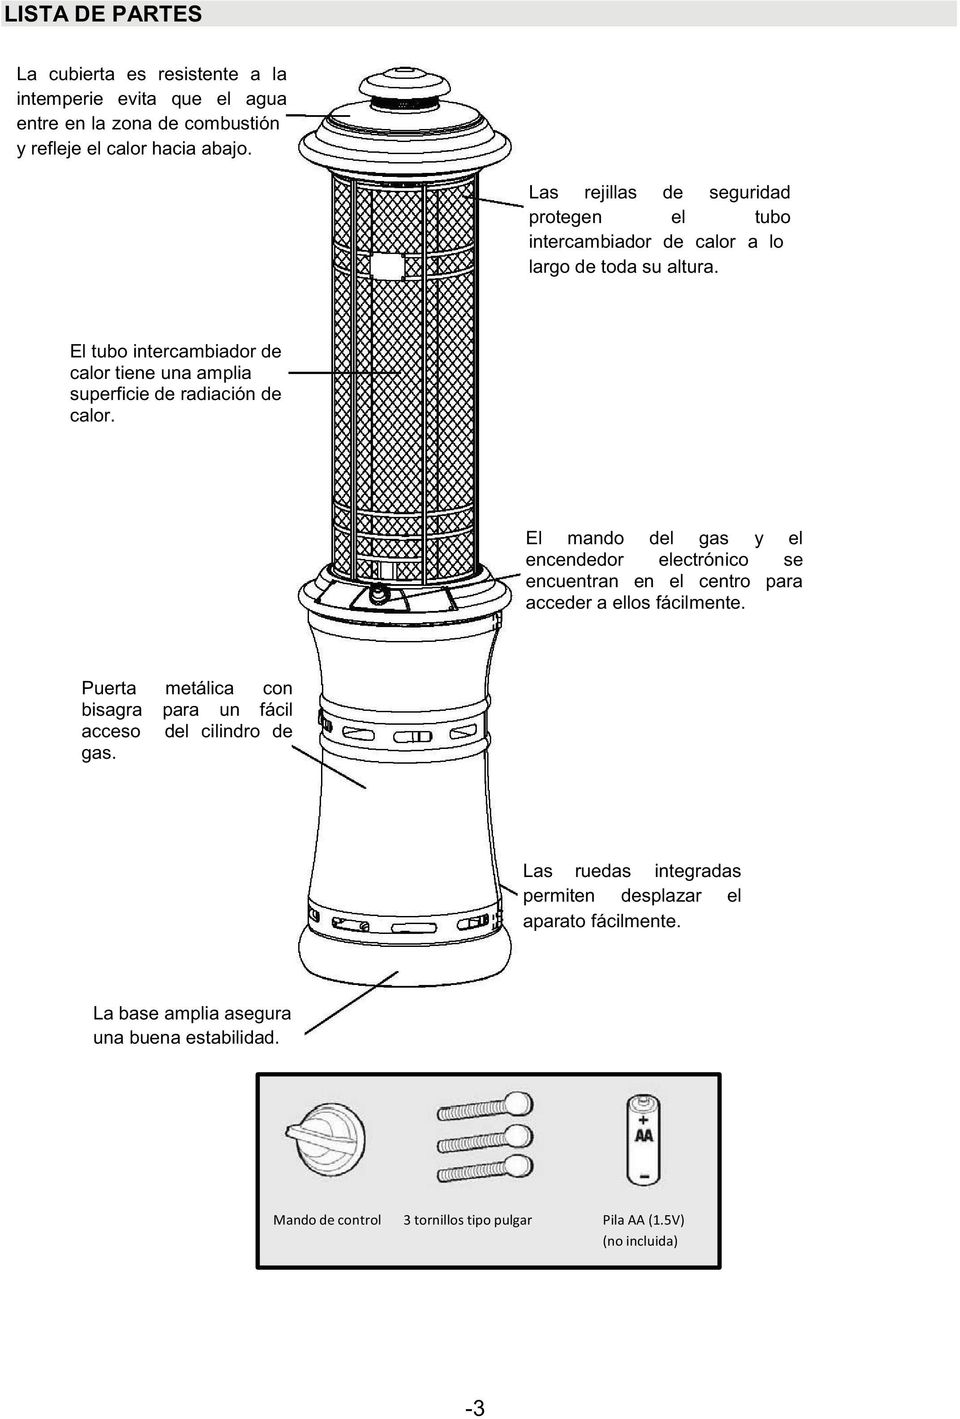 El tubo intercambiador de calor tiene una amplia superficie de radiación de calor.